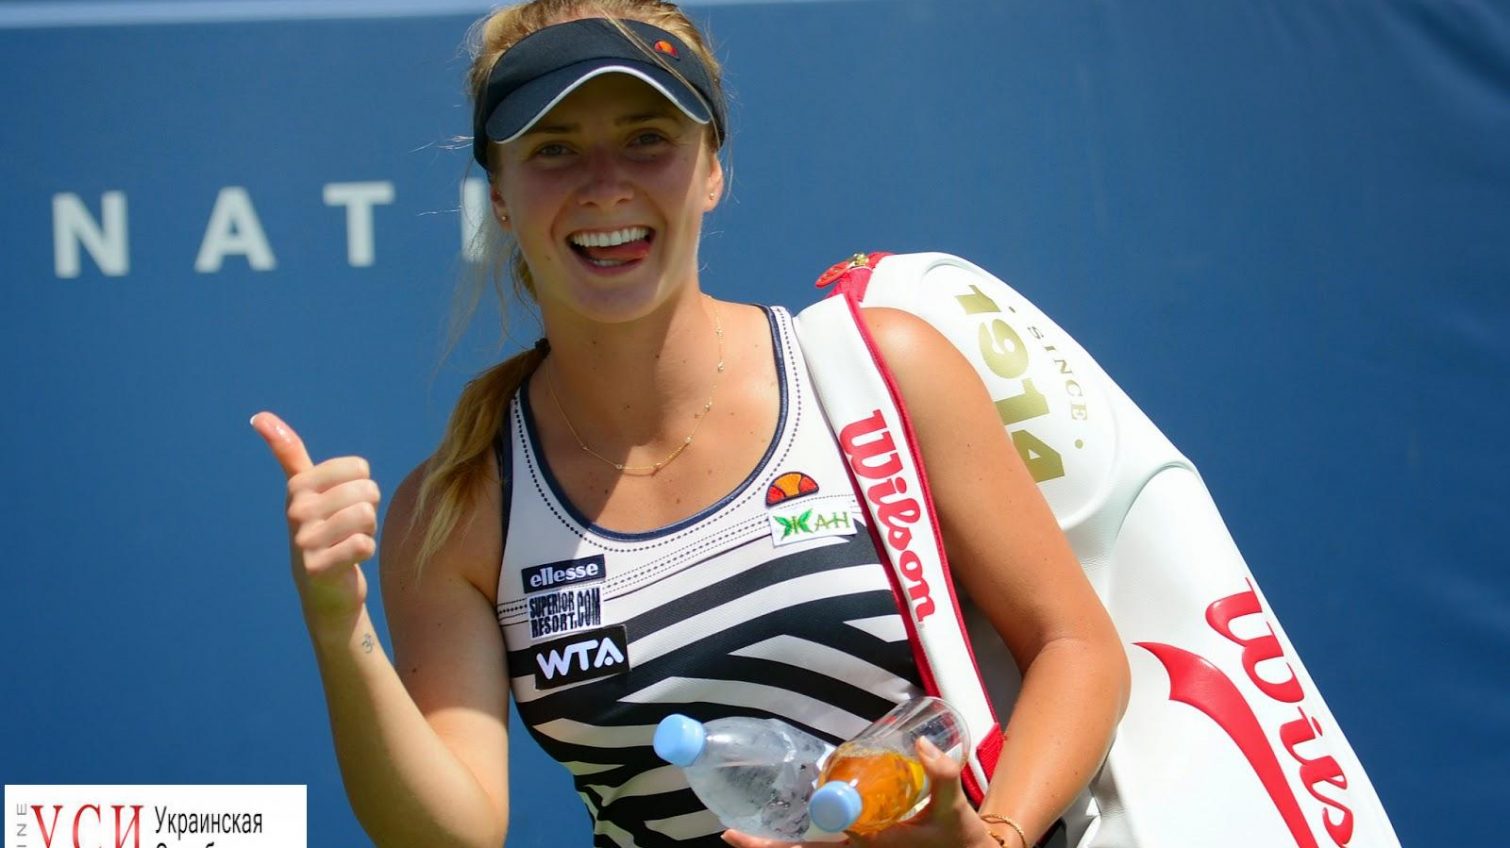 Одесситка Свитолина стала первой украинской теннисисткой, вошедшей в топ-3 лучших ракеток мира «фото»